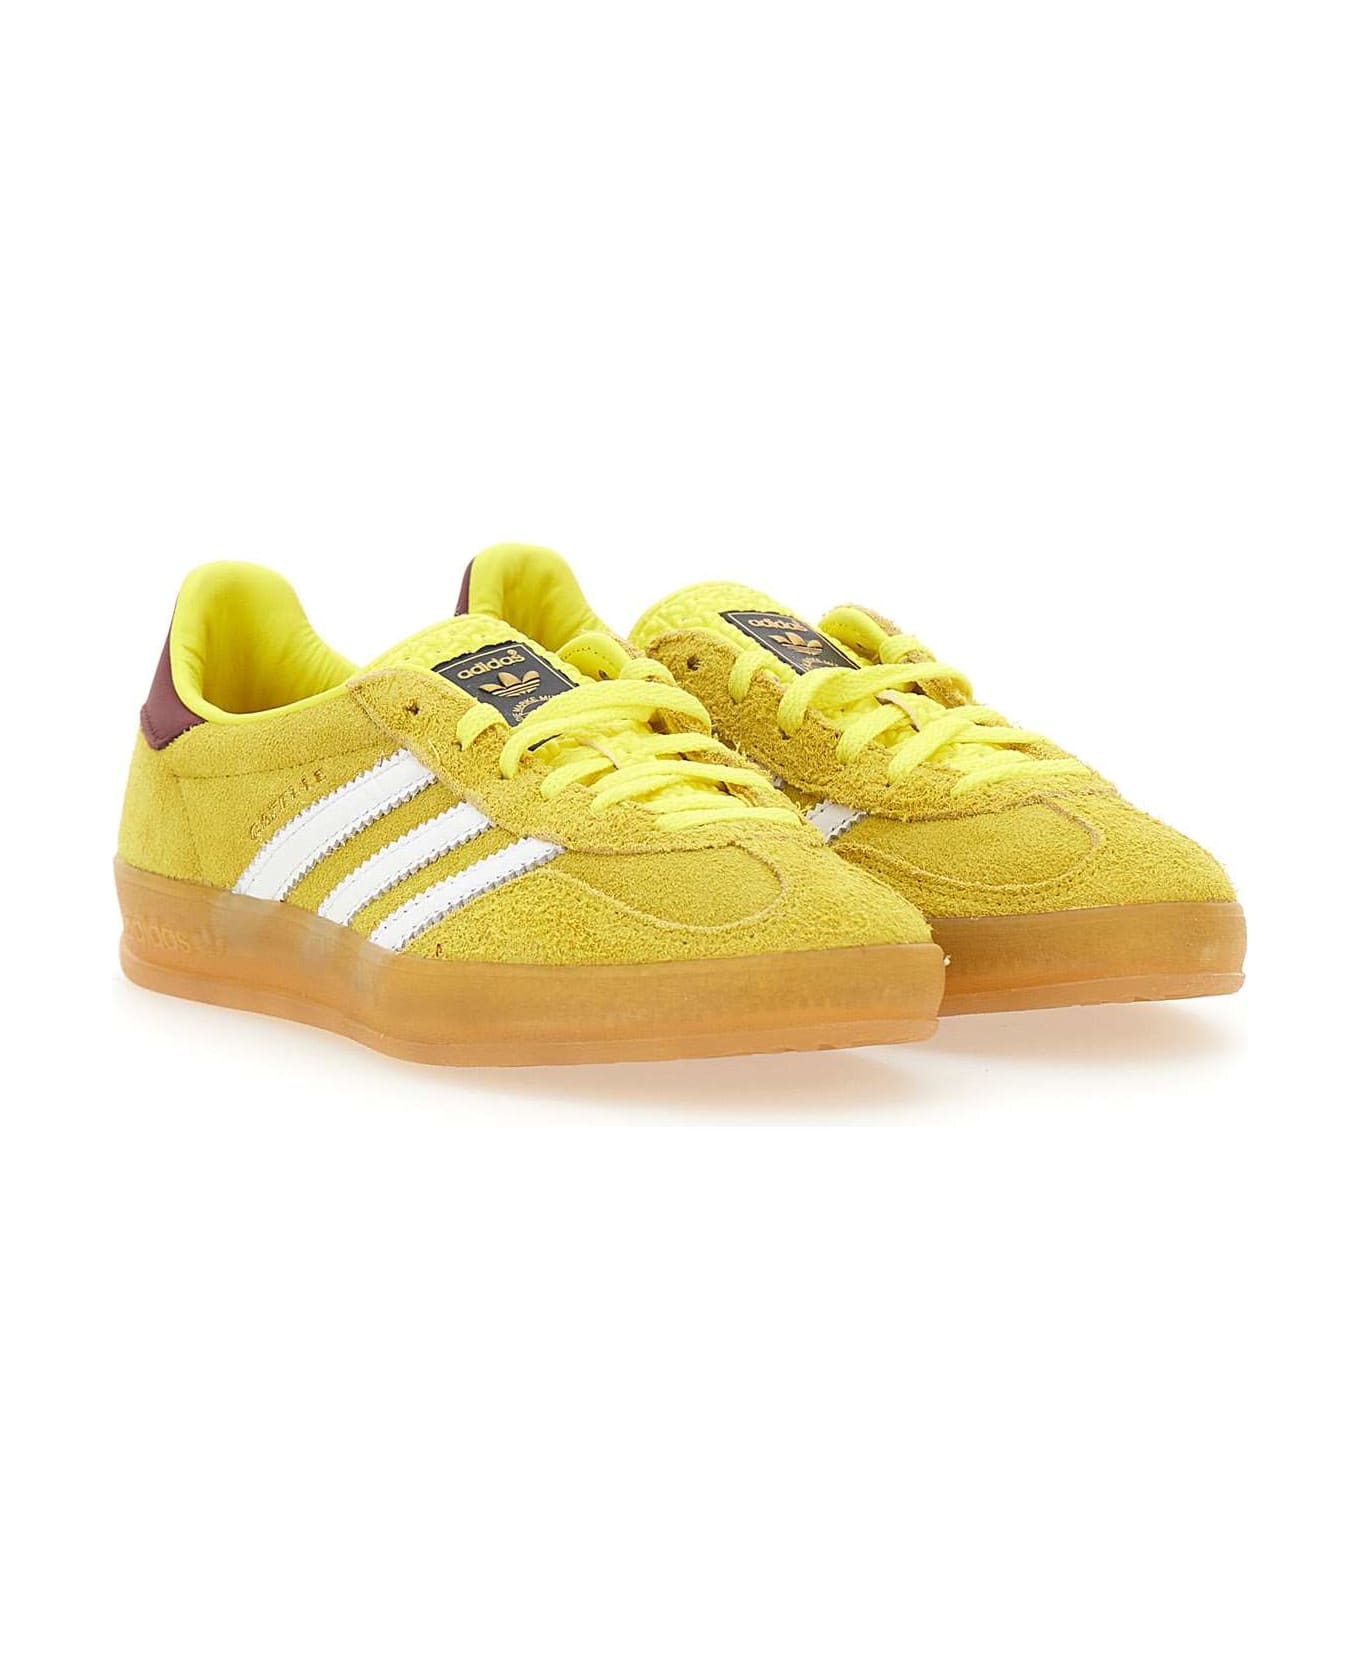 Adidas Originals 'gazelle Indoor' Suede Sneakers - Yellow